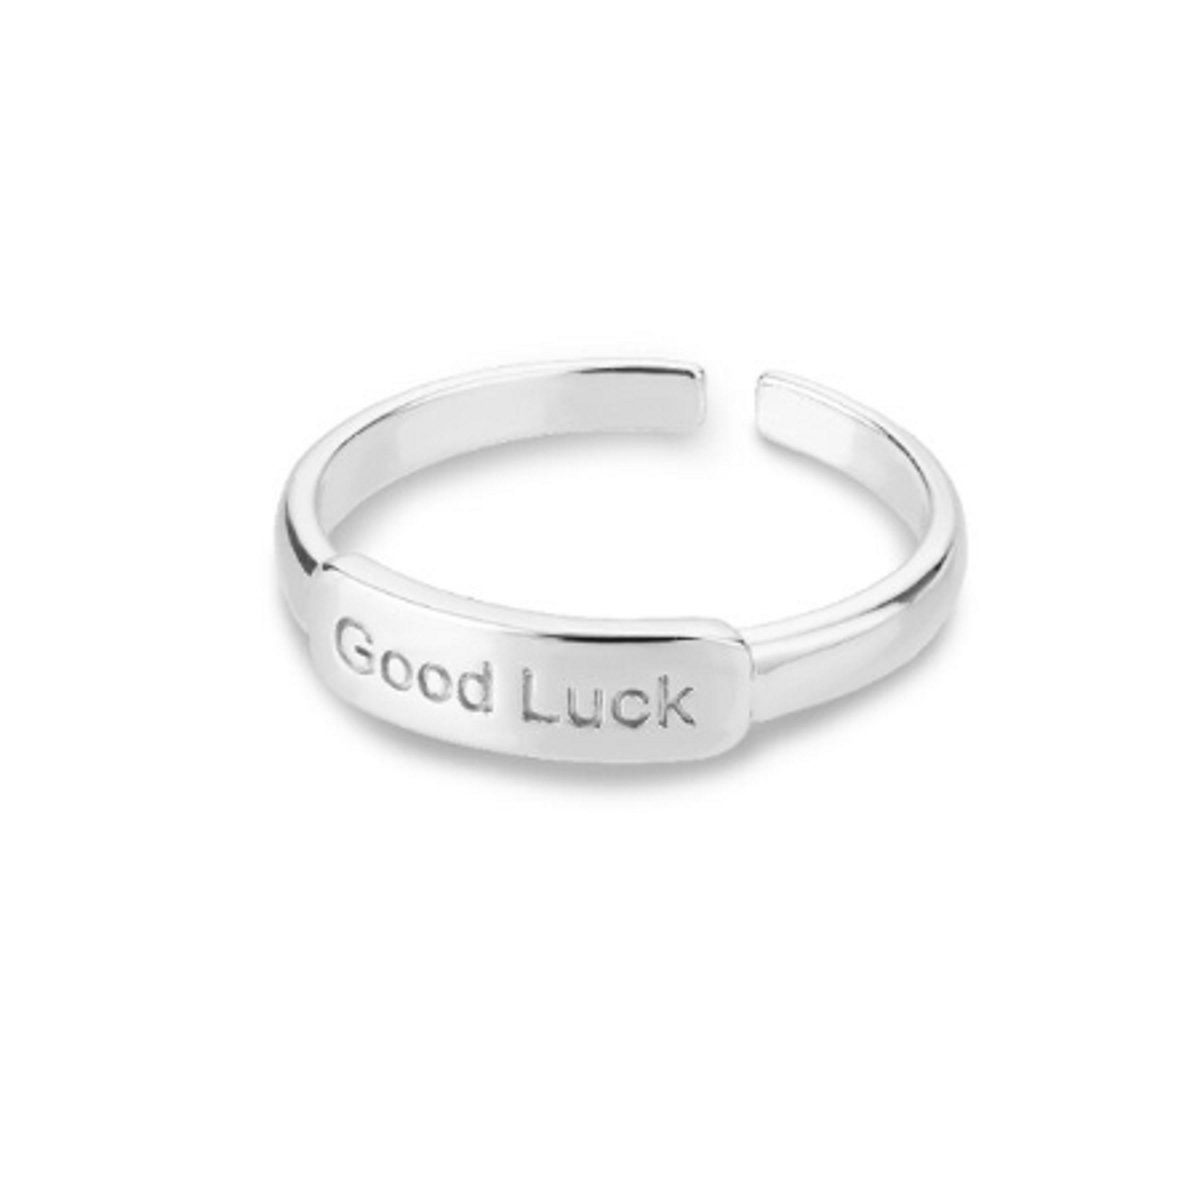 Ring stainless steel ''good luck'' tekst ring, roestvrijstaal, zilverkleurig